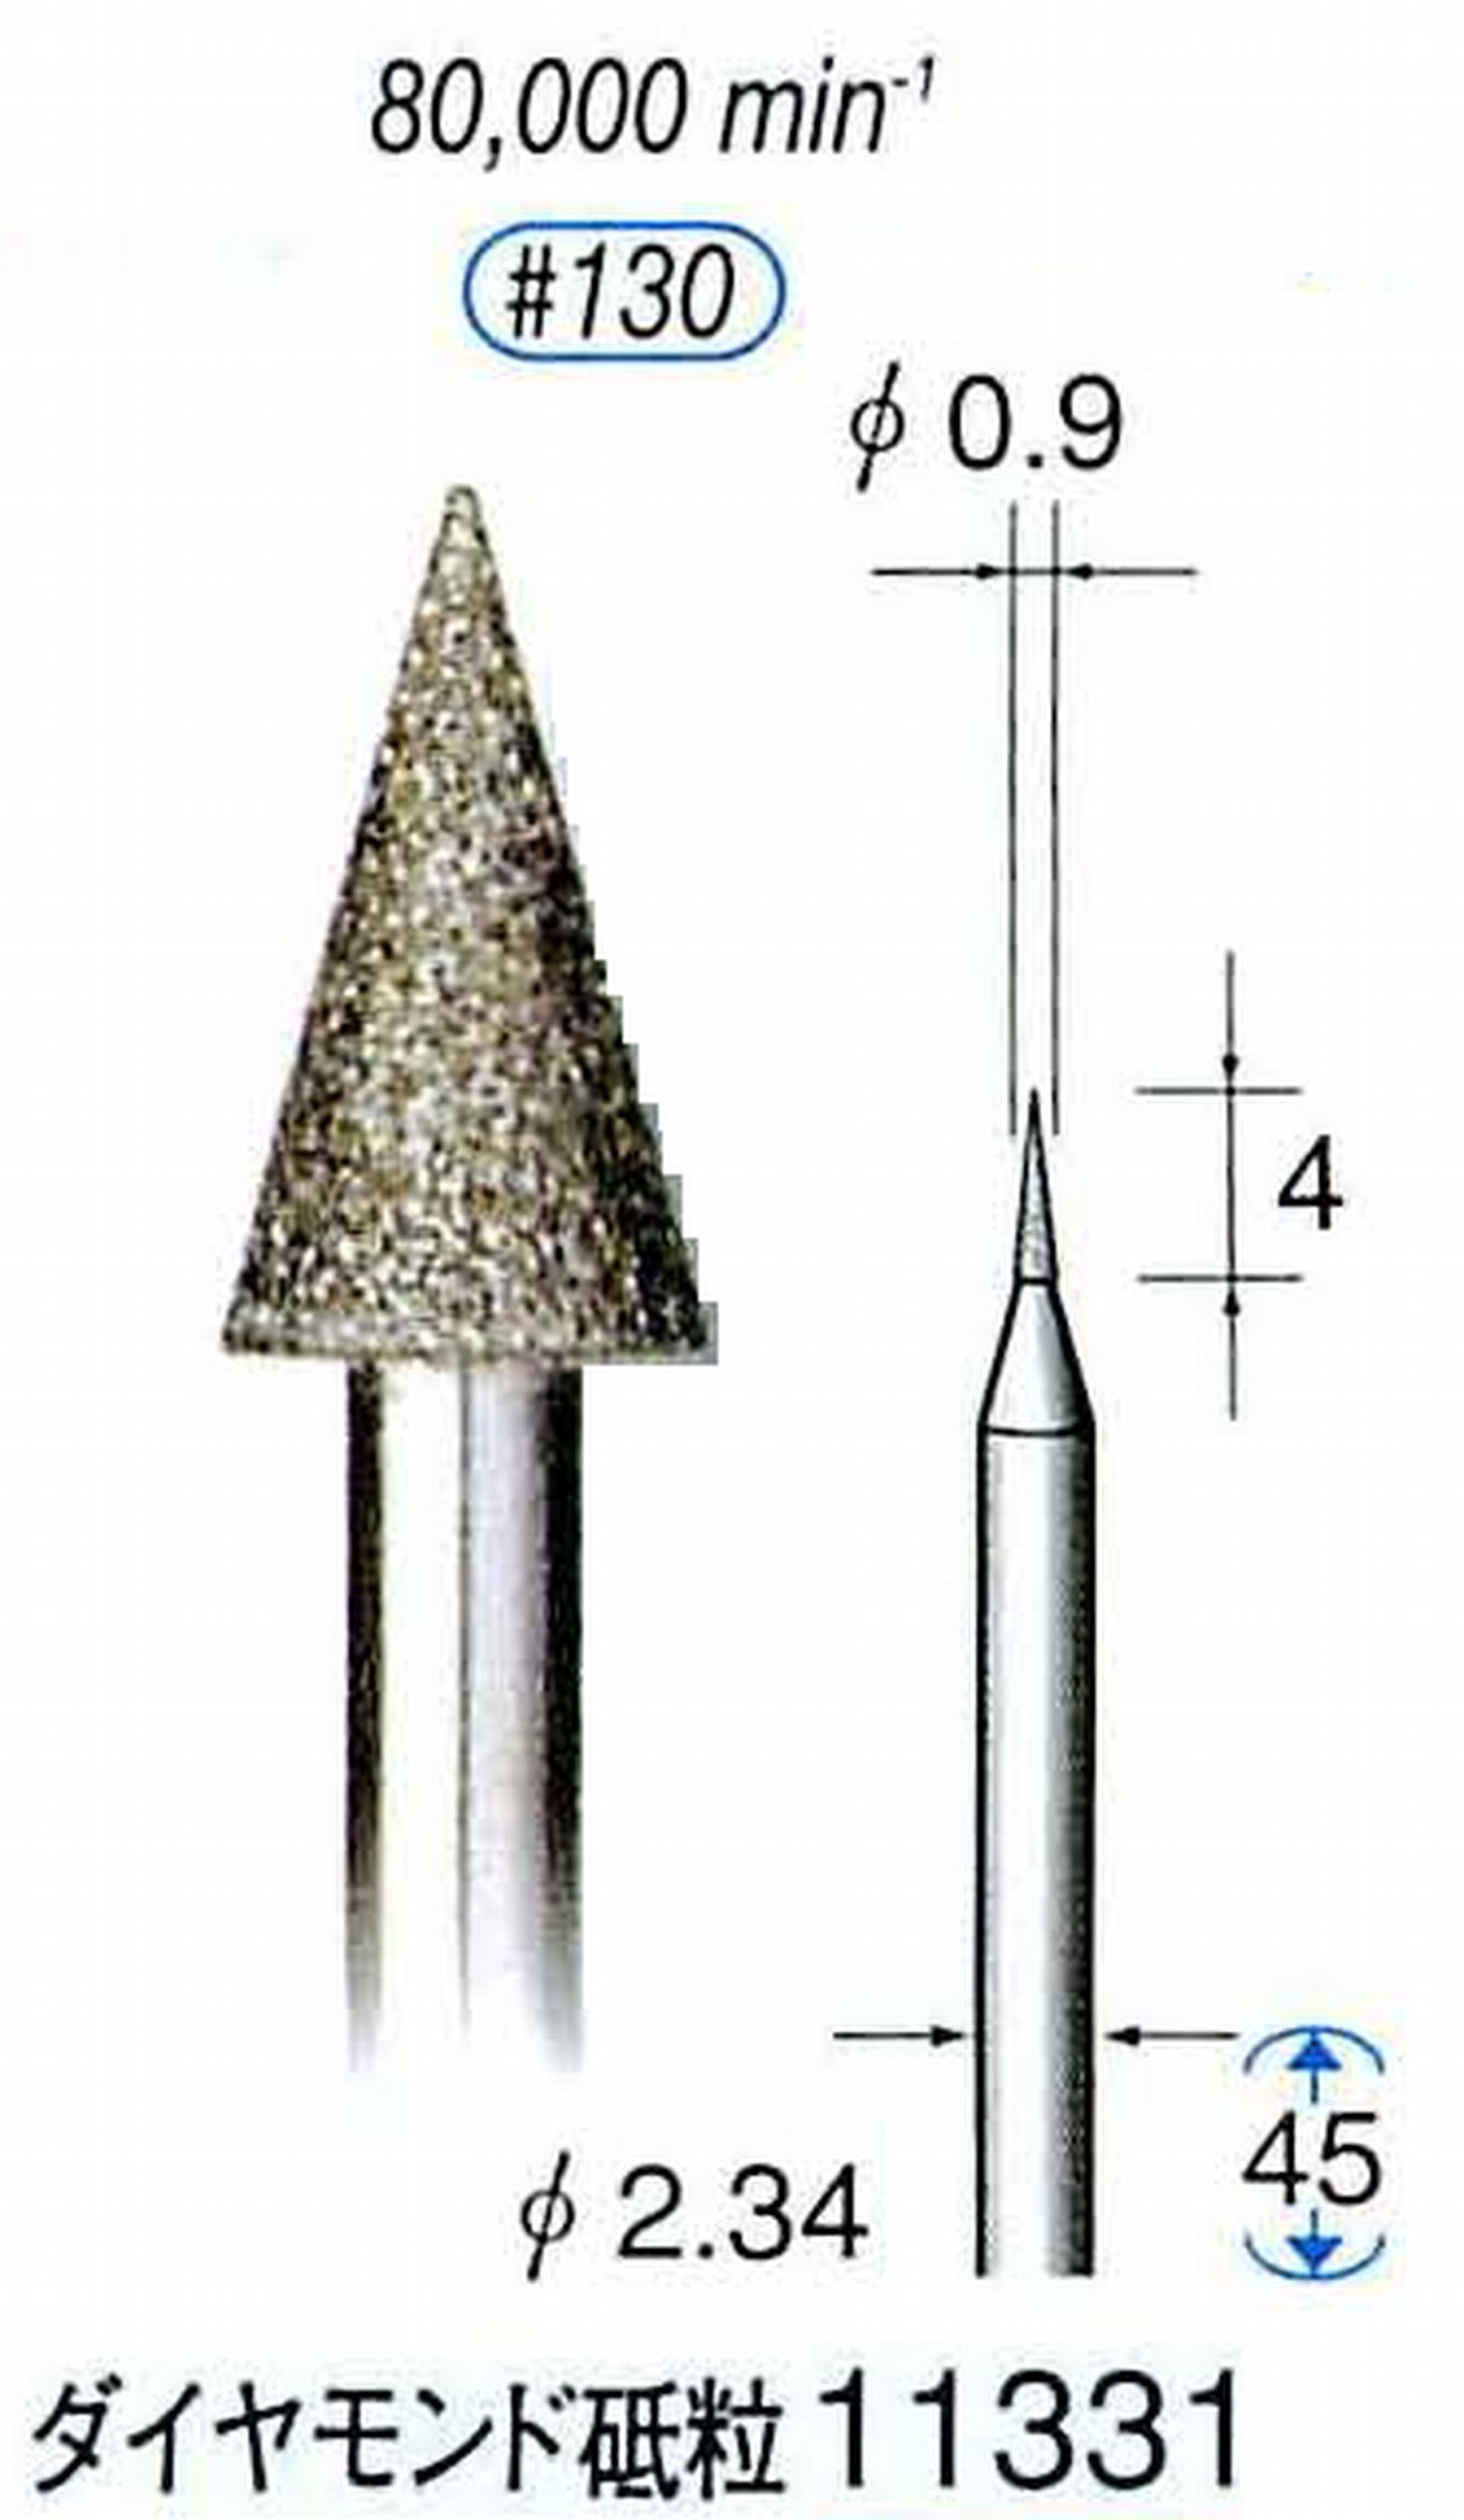 ナカニシ/NAKANISHI 電着ダイヤモンドバー ダイヤモンド砥粒 軸径(シャンク)φ2.34mm 11331